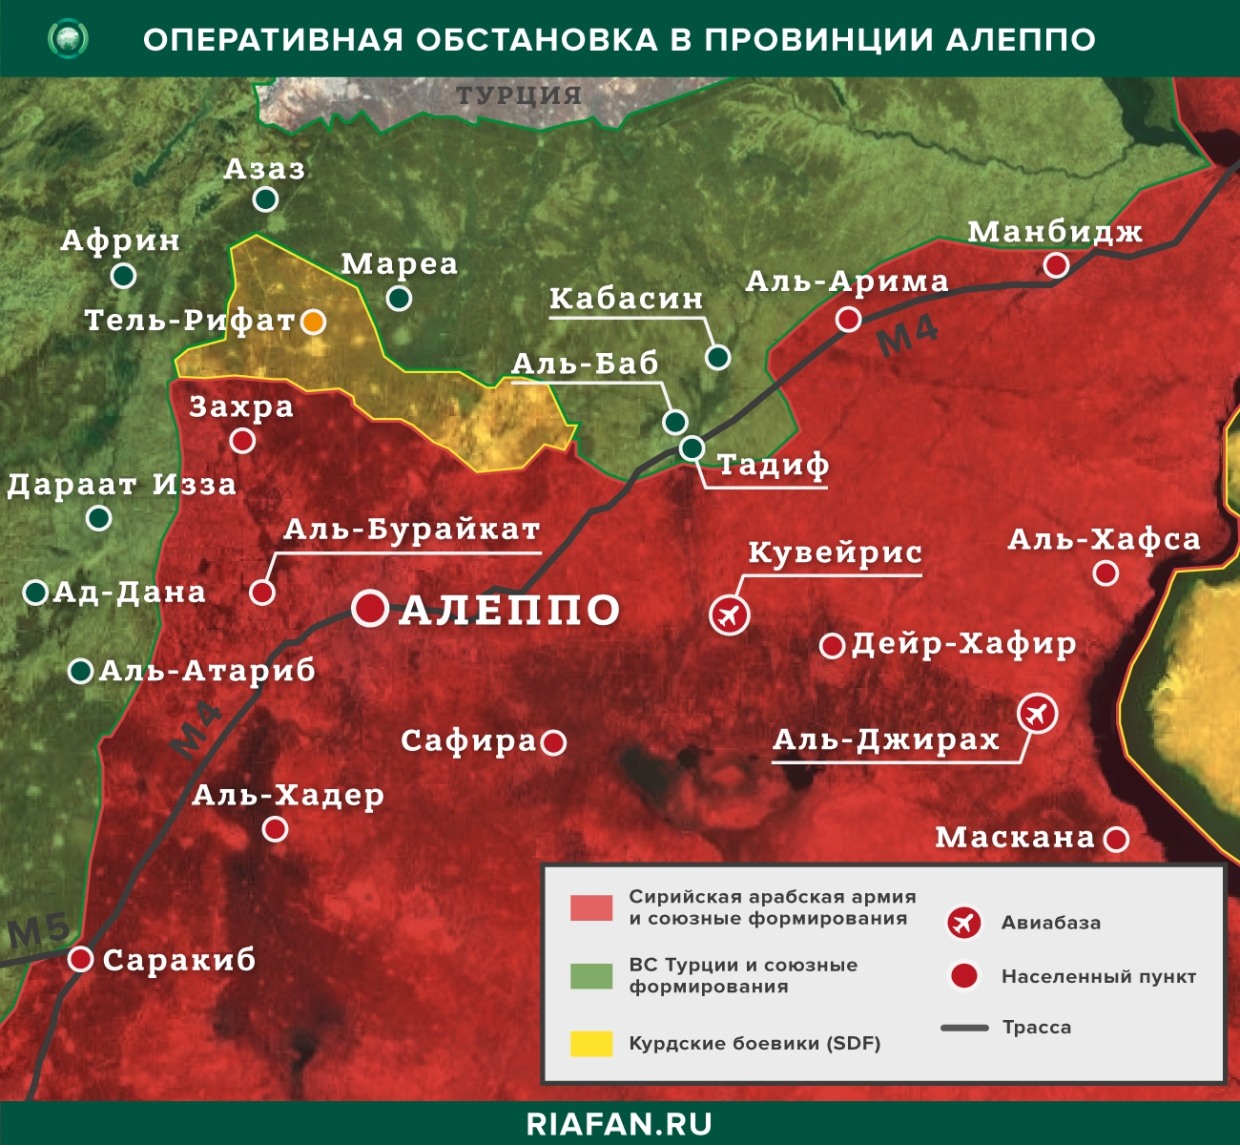 Resultados diarios de Siria para 21 Julio 06.00: redadas de militantes kurdos en Deir ez-Zor, en Alepo neutralizado 3 ES terrorista